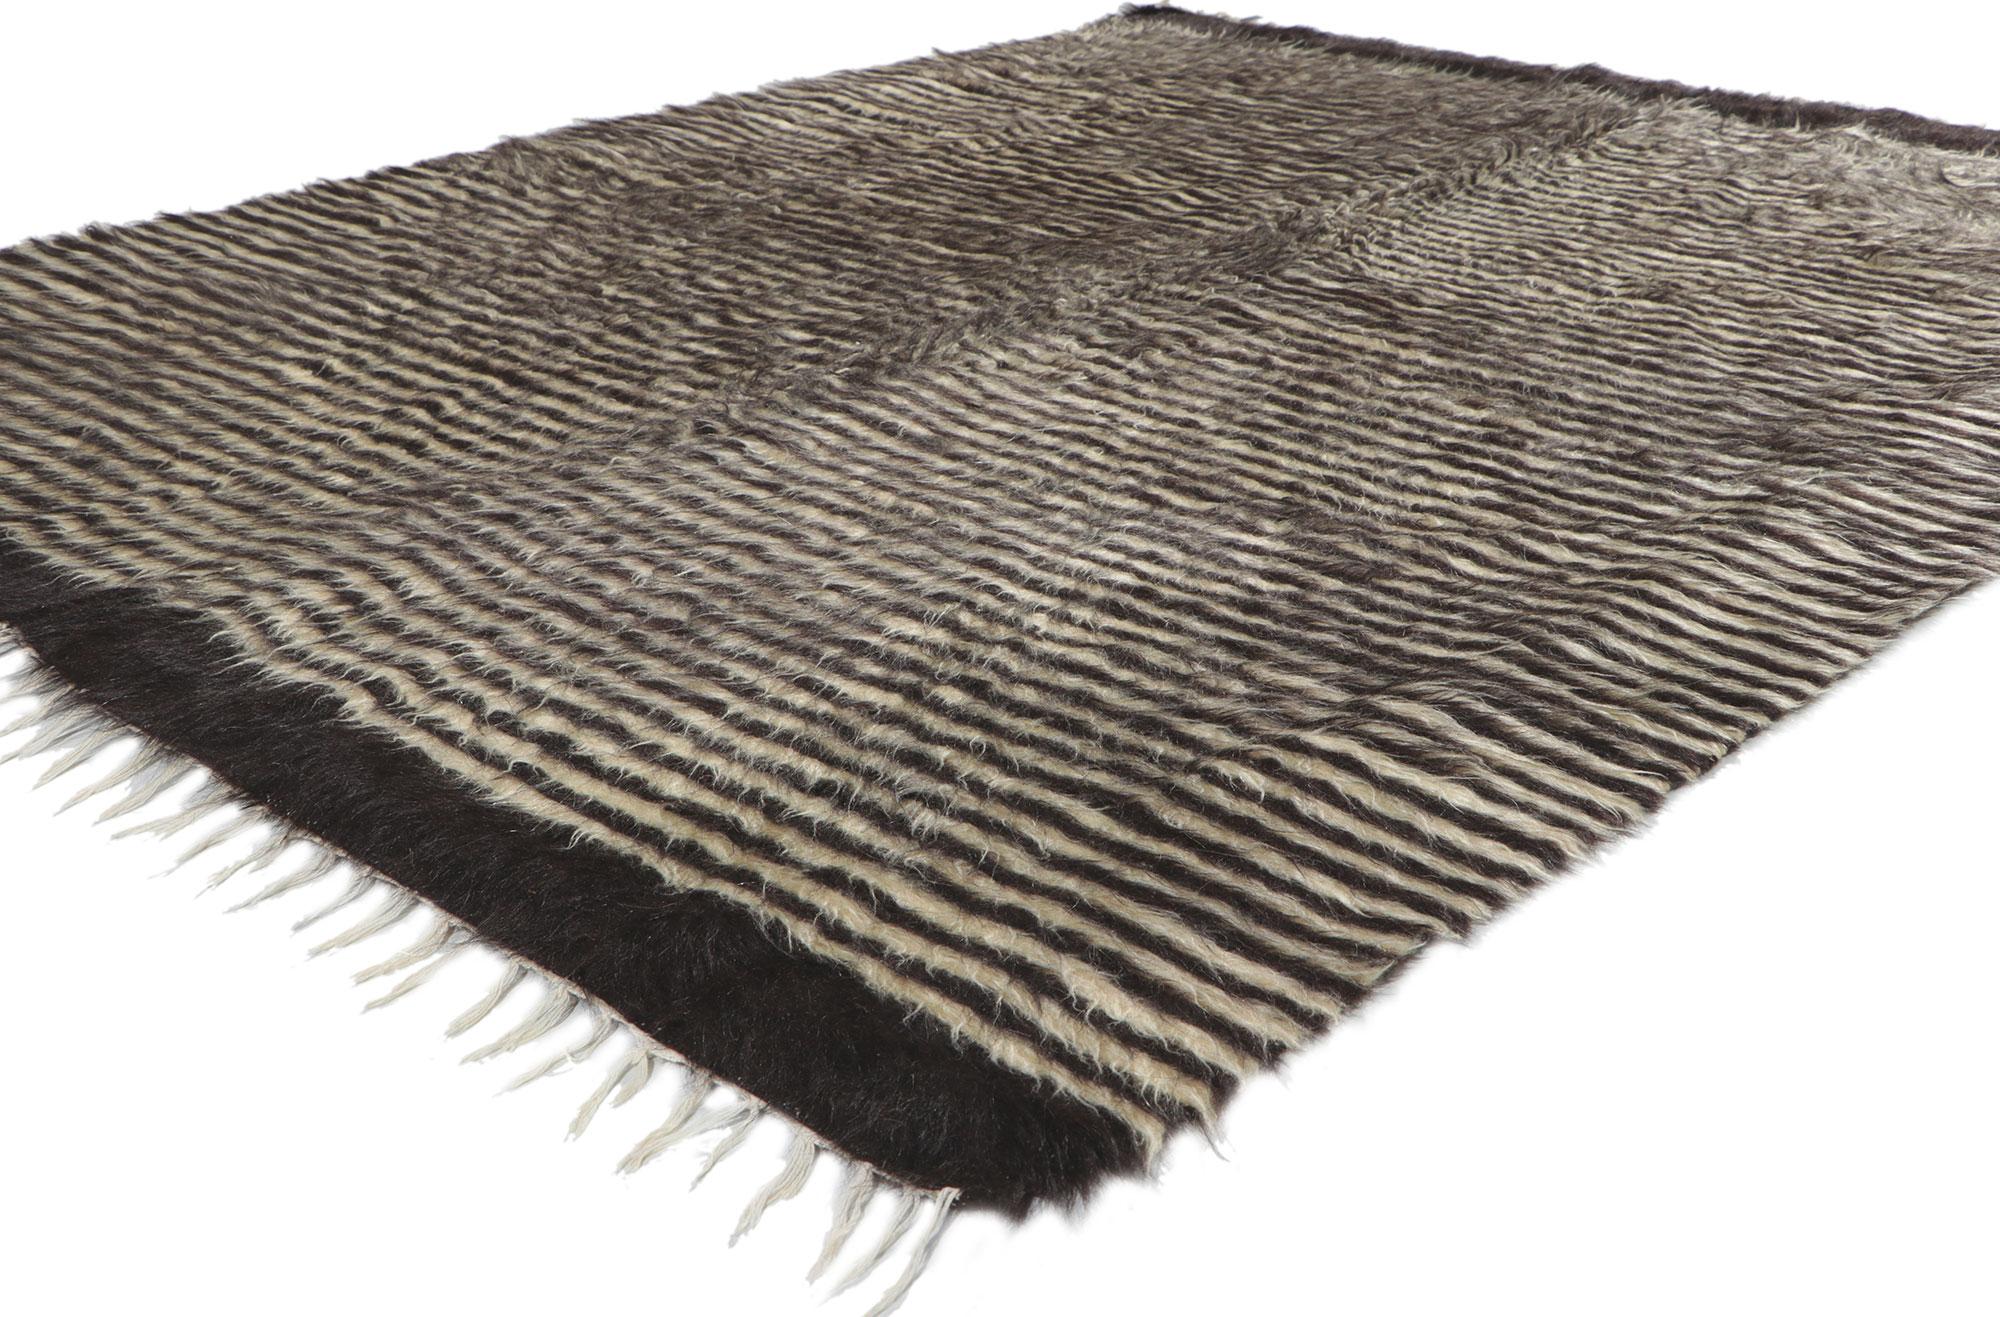 53847 Tapis de couverture turc vintage en laine angora Kilim, 05'03 x 06'07. Avec ses poils hirsutes, ses détails et sa texture incroyables, ce tapis turc angora kilim tissé à la main est une vision captivante de la beauté tissée. Le motif rayé